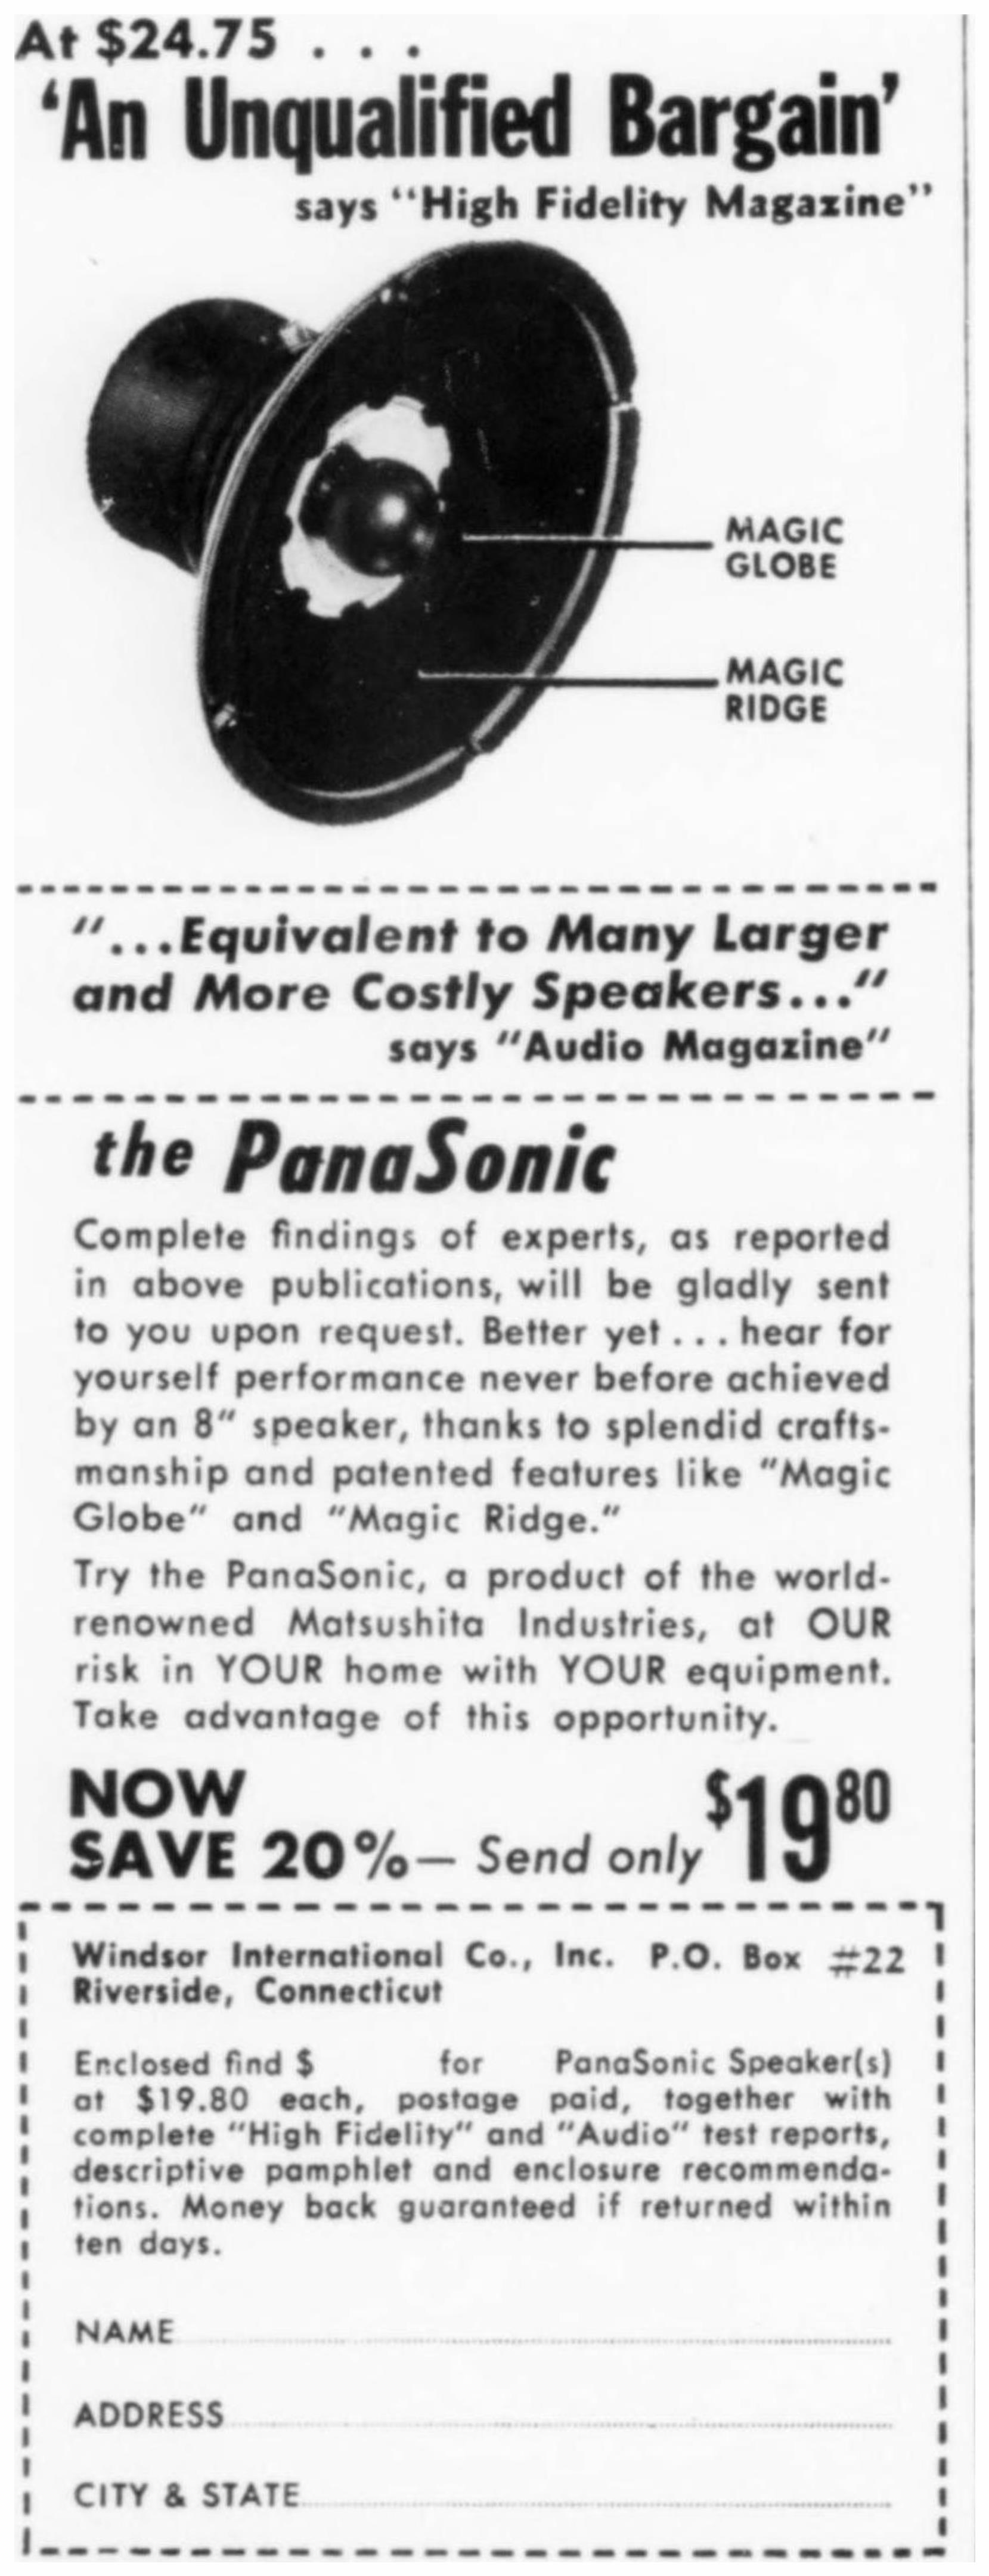 Panasonic 1956 0.jpg